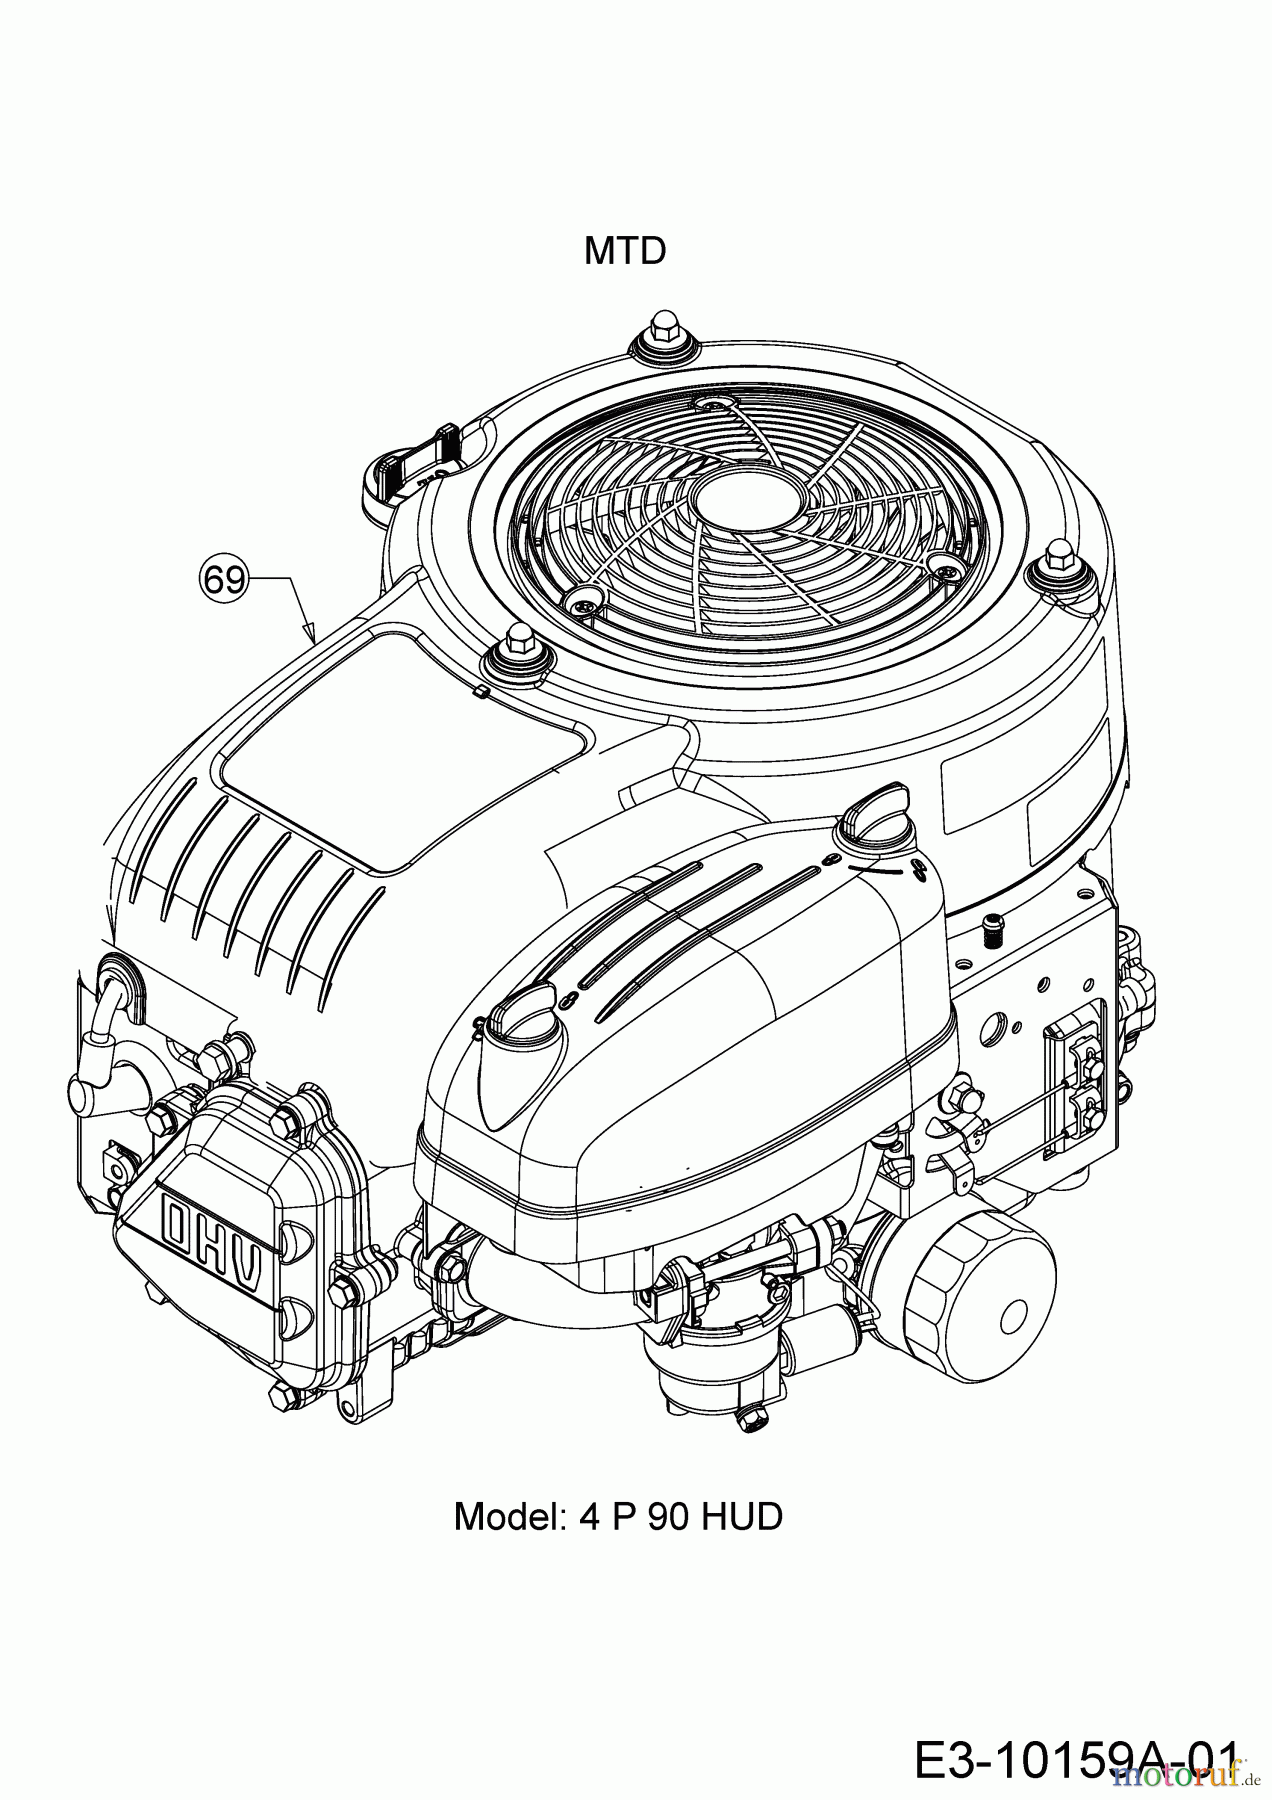  Helington Rasentraktoren H 92 T 13I276KE686  (2018) Motor MTD